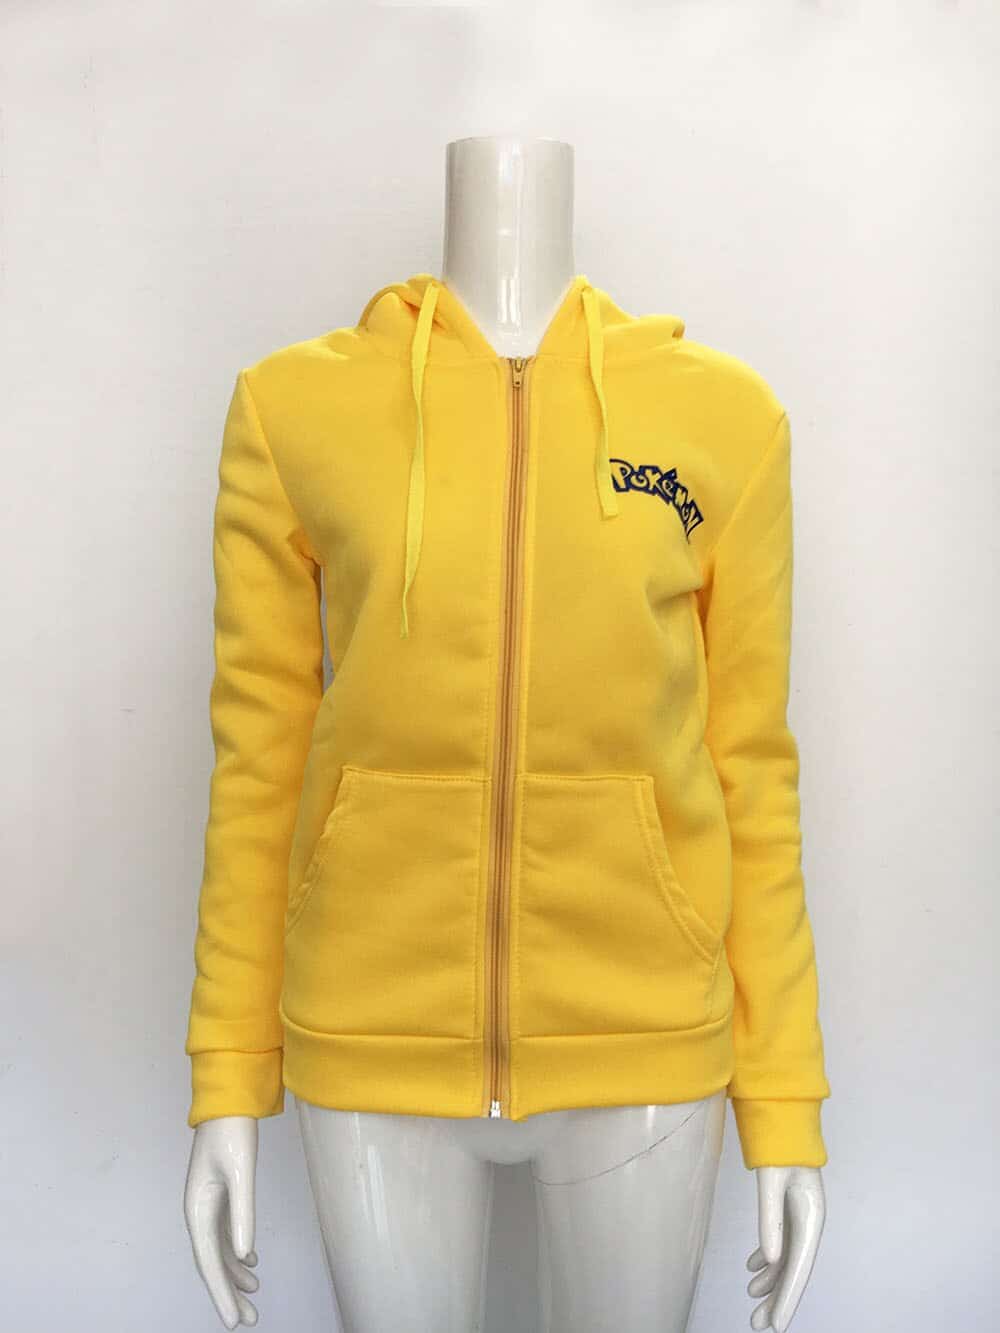 pikachu hoodie women's